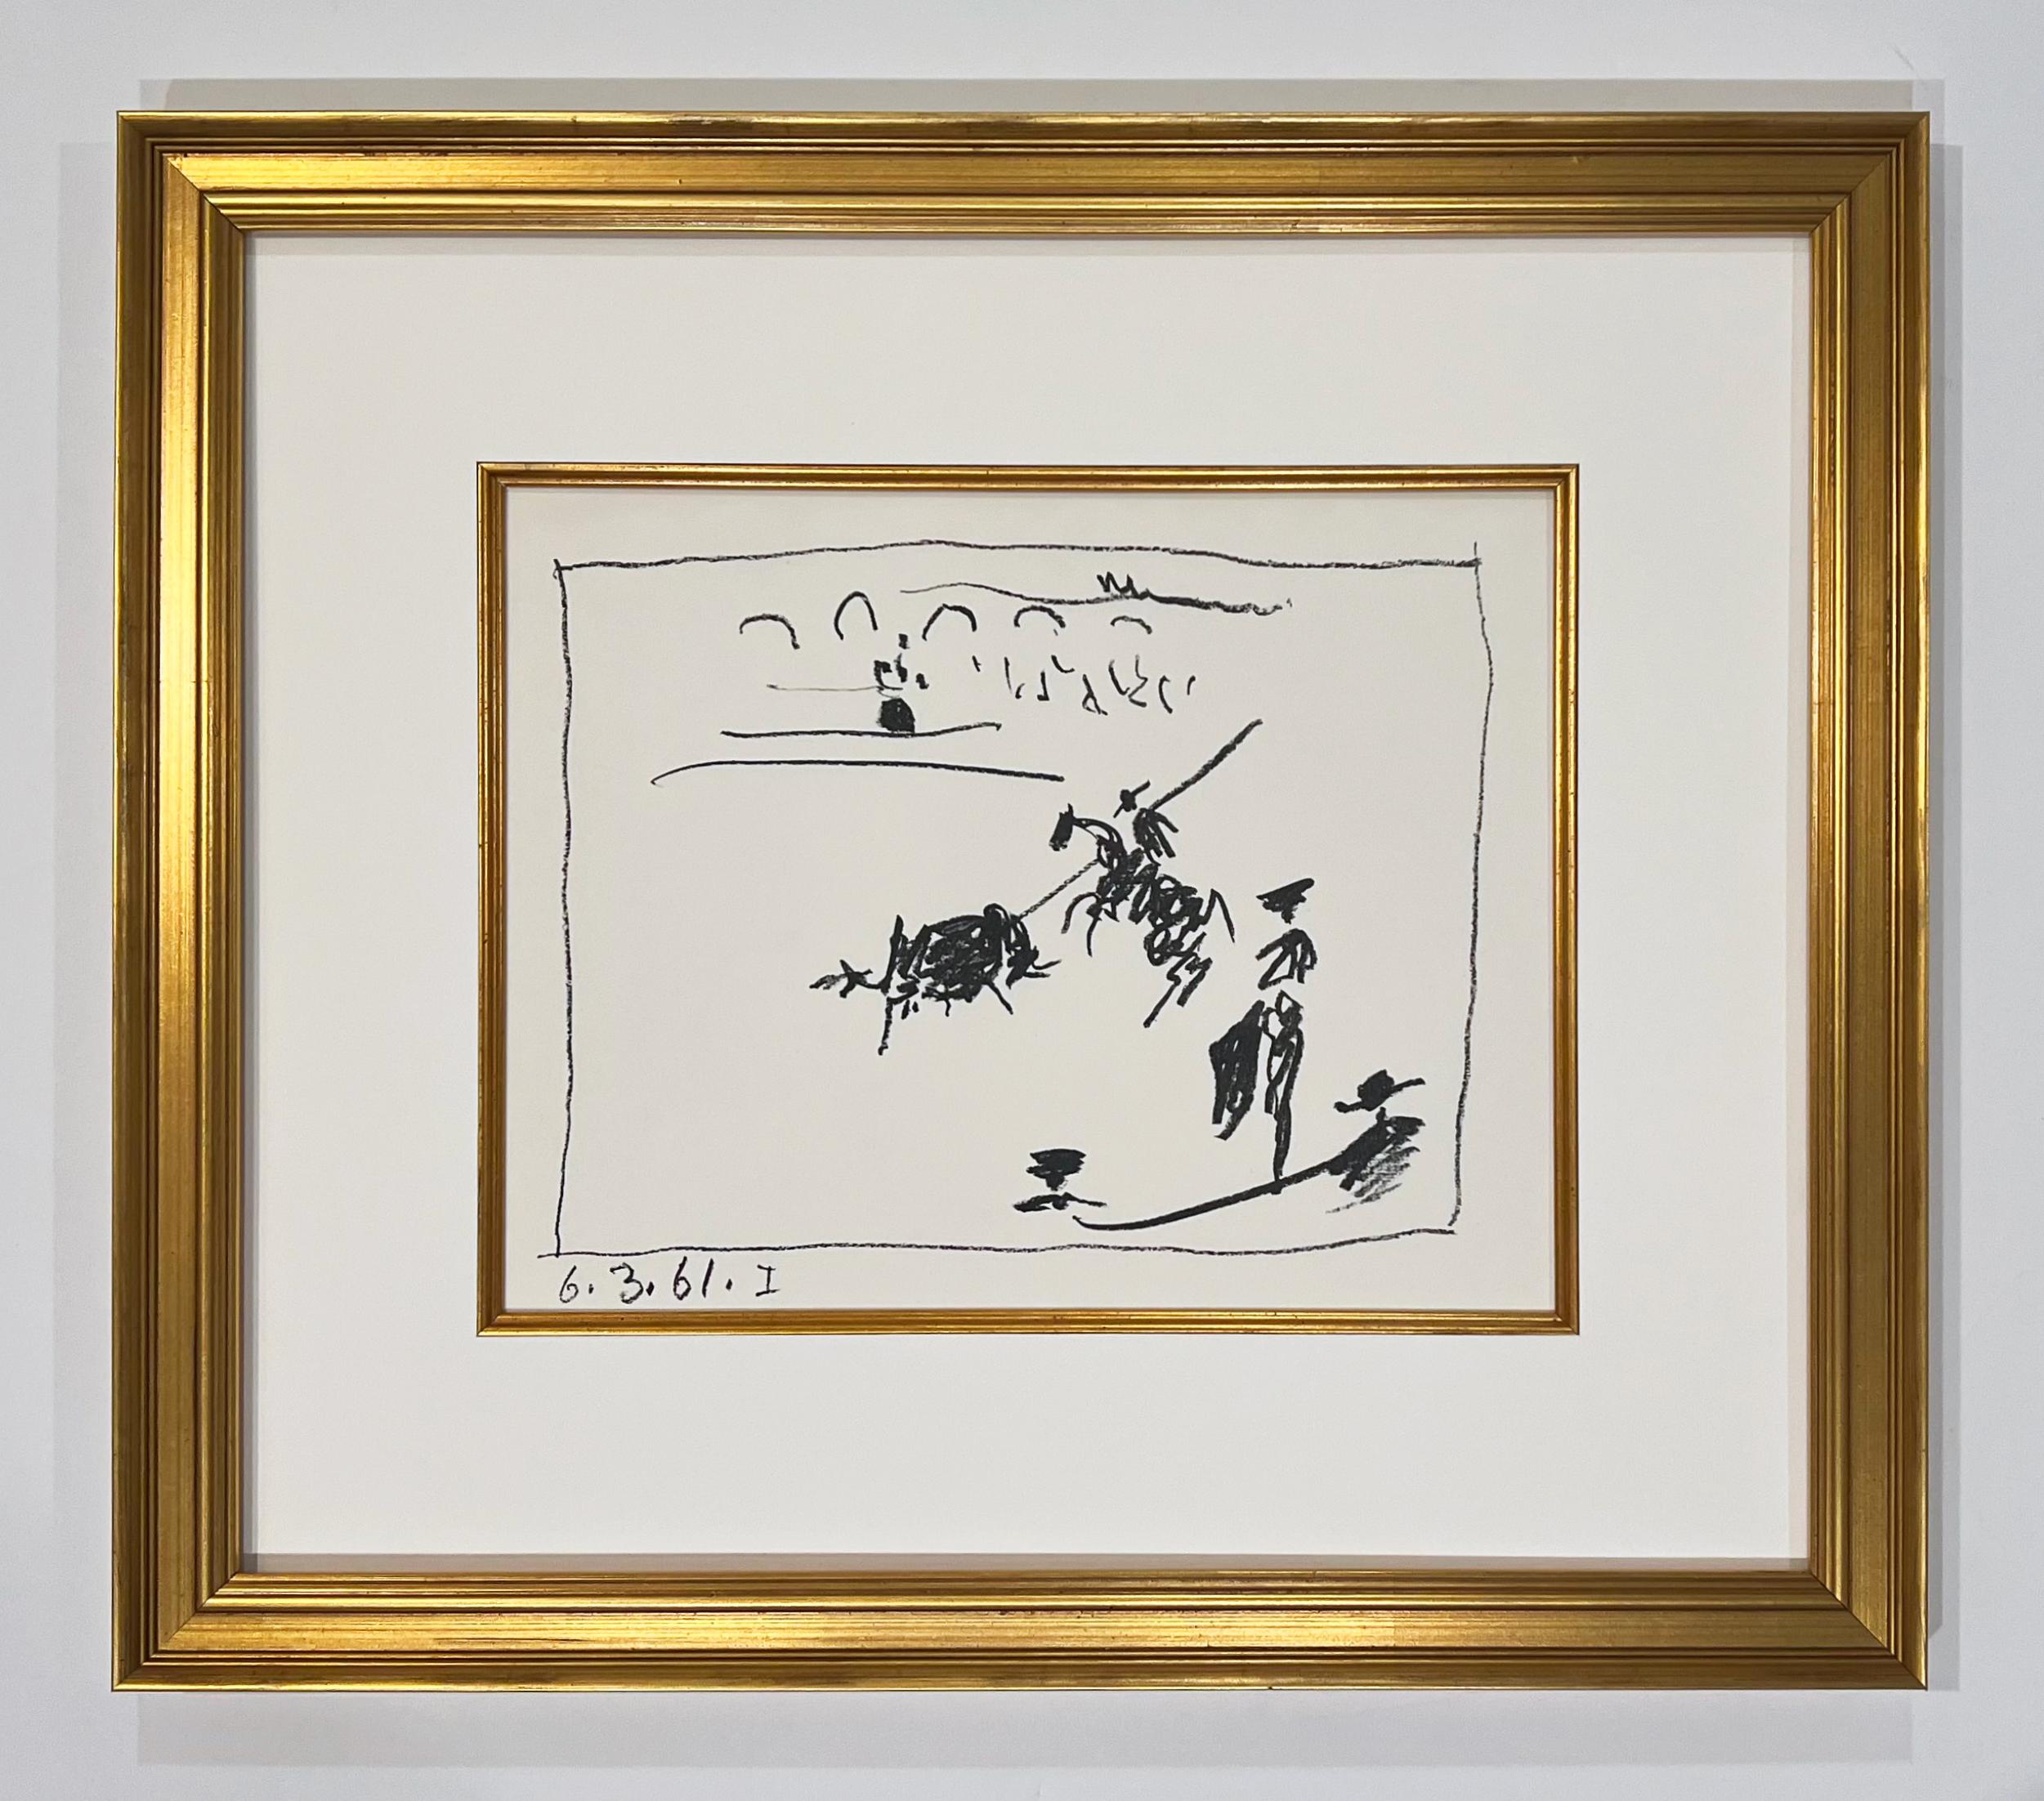 Künstler: Pablo Picasso
Titel: La Pique (I), Le Picador (II), Jeu de la Cape (III), Les Banderilles (IV)
Mappe: A Los Toros Avec Picasso
Medium: Satz von vier Transferlithographien
Jahr: 1961
Auflage: Unnumeriert
Rahmengröße: 16 3/4